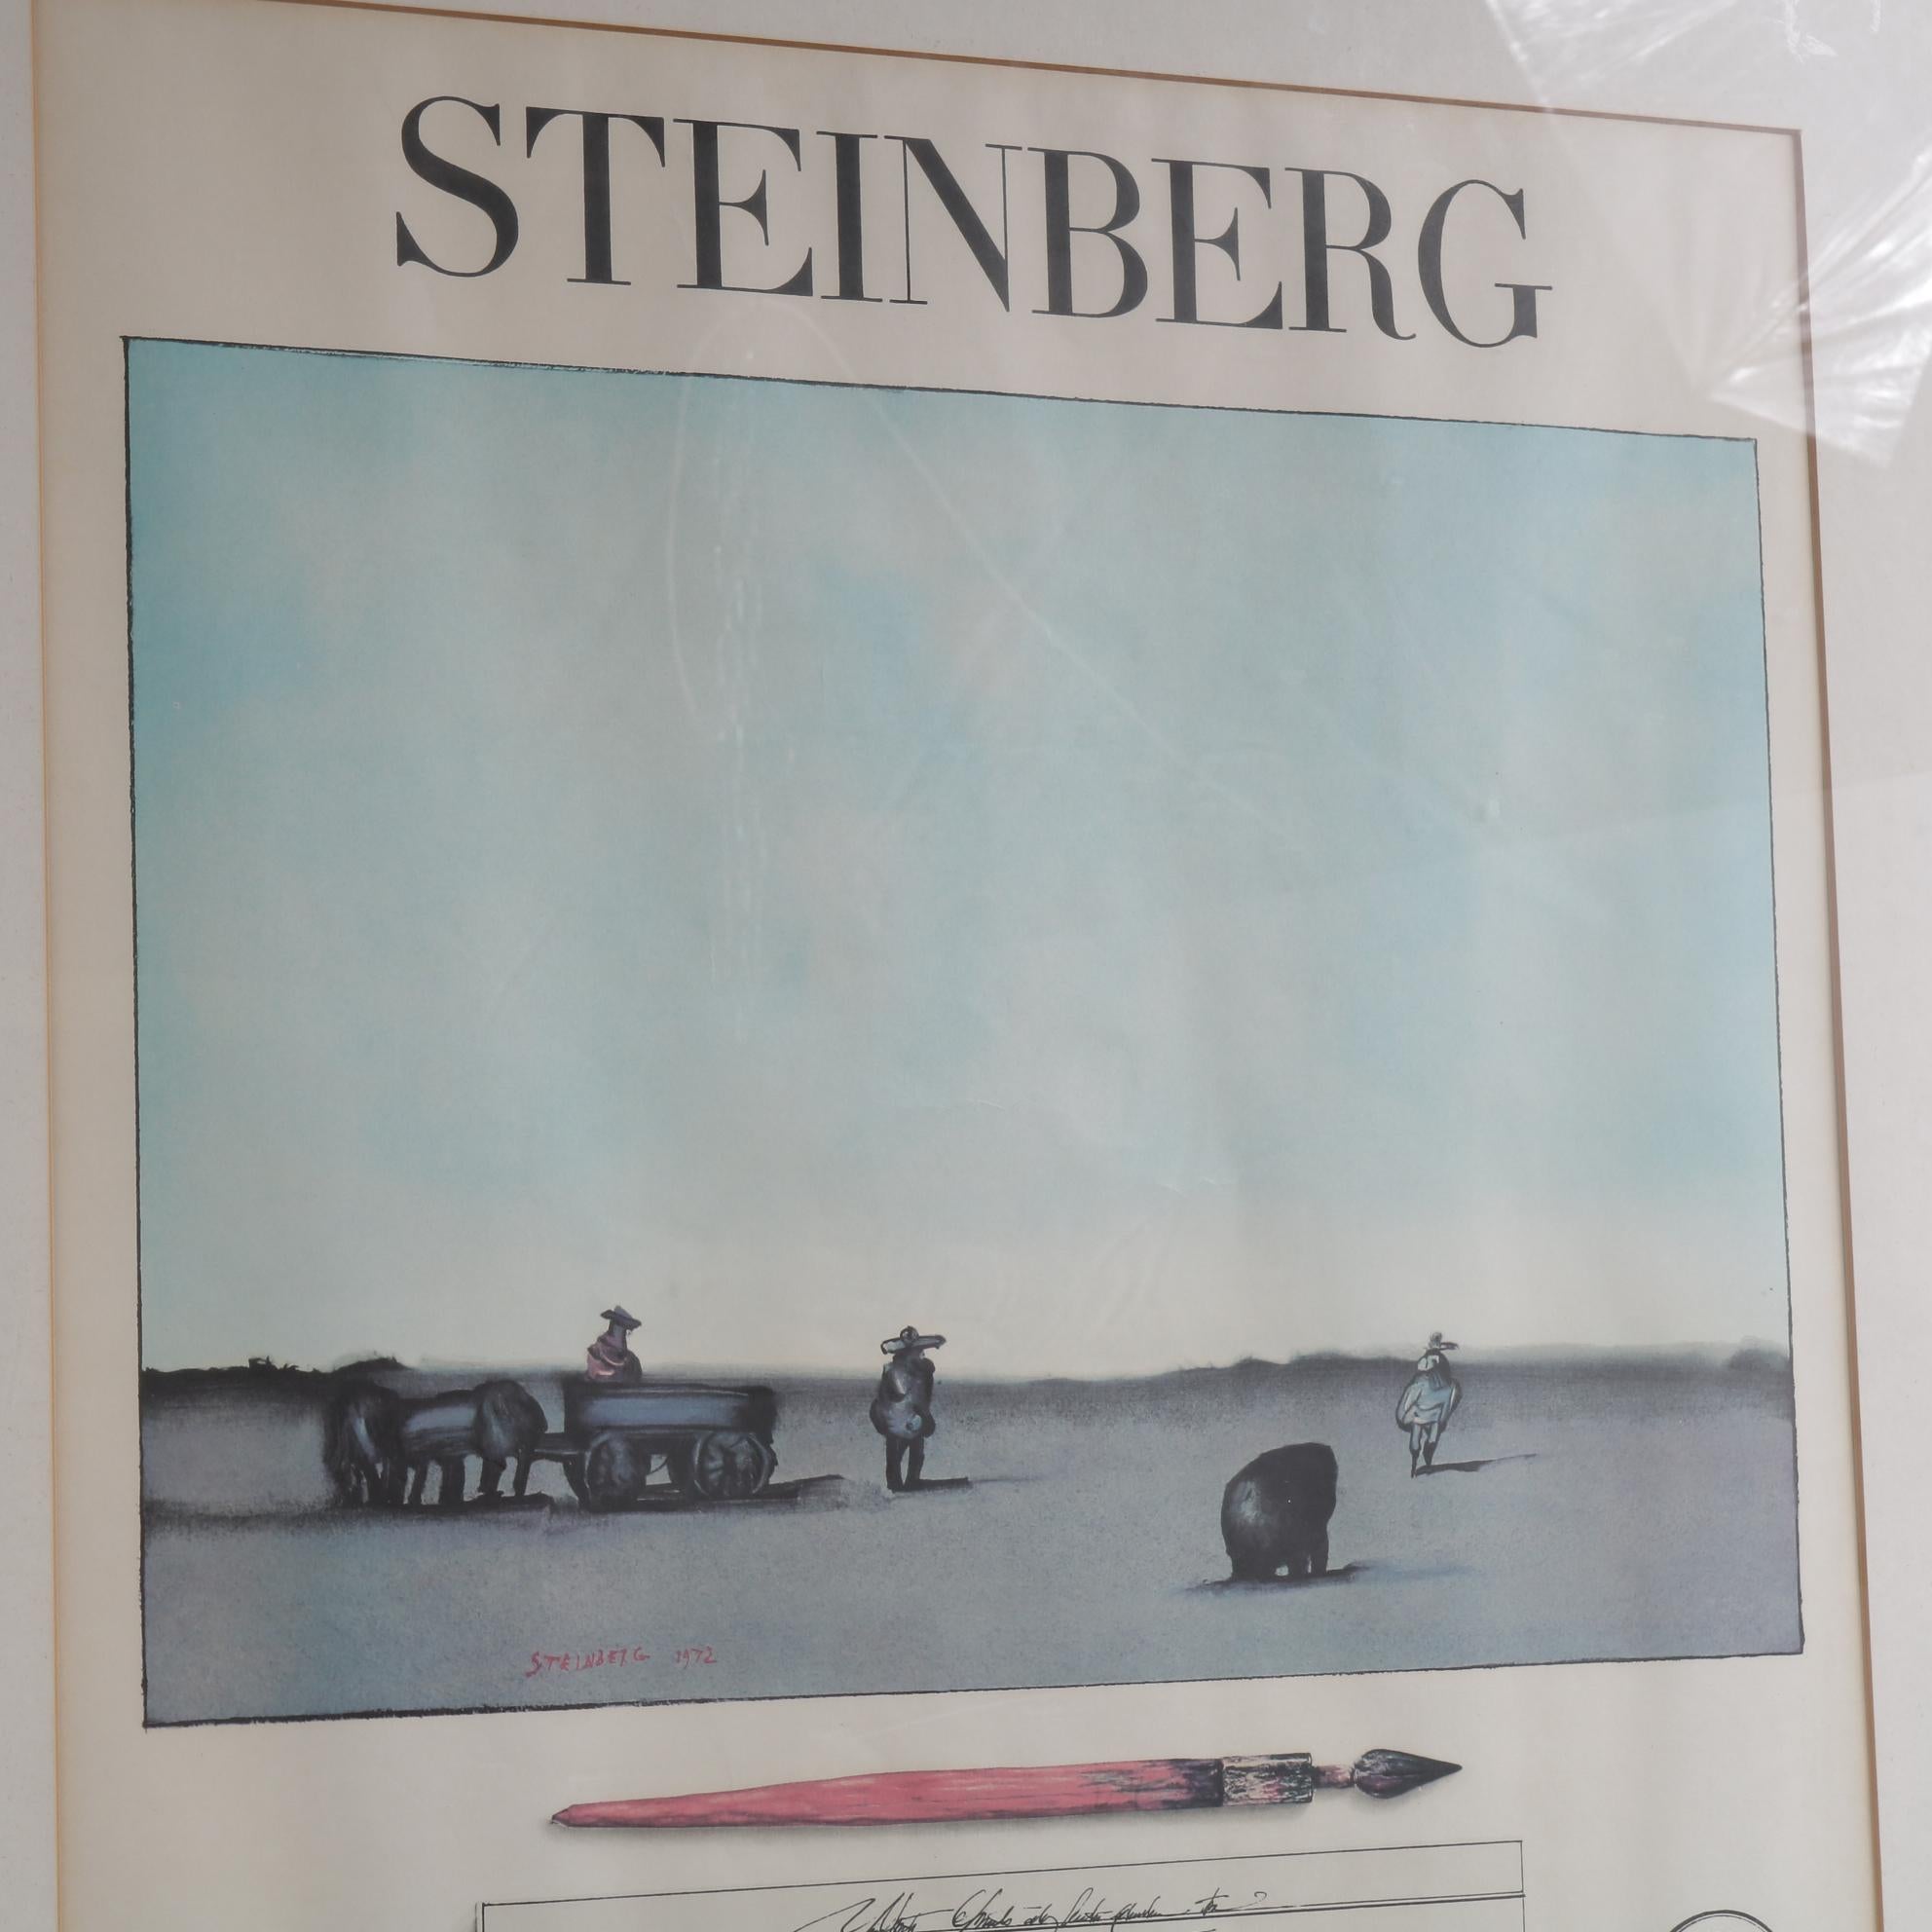 Eine schöne Lithografie für die Steinberg-Ausstellung in der Galerie Maeght, gedruckt von Mourlot in Paris, Frankreich, 1973.

Gerahmt in einem schönen, minimalistischen schwarzen Rahmen mit Passepartout, der das Kunstwerk optimal zur Geltung